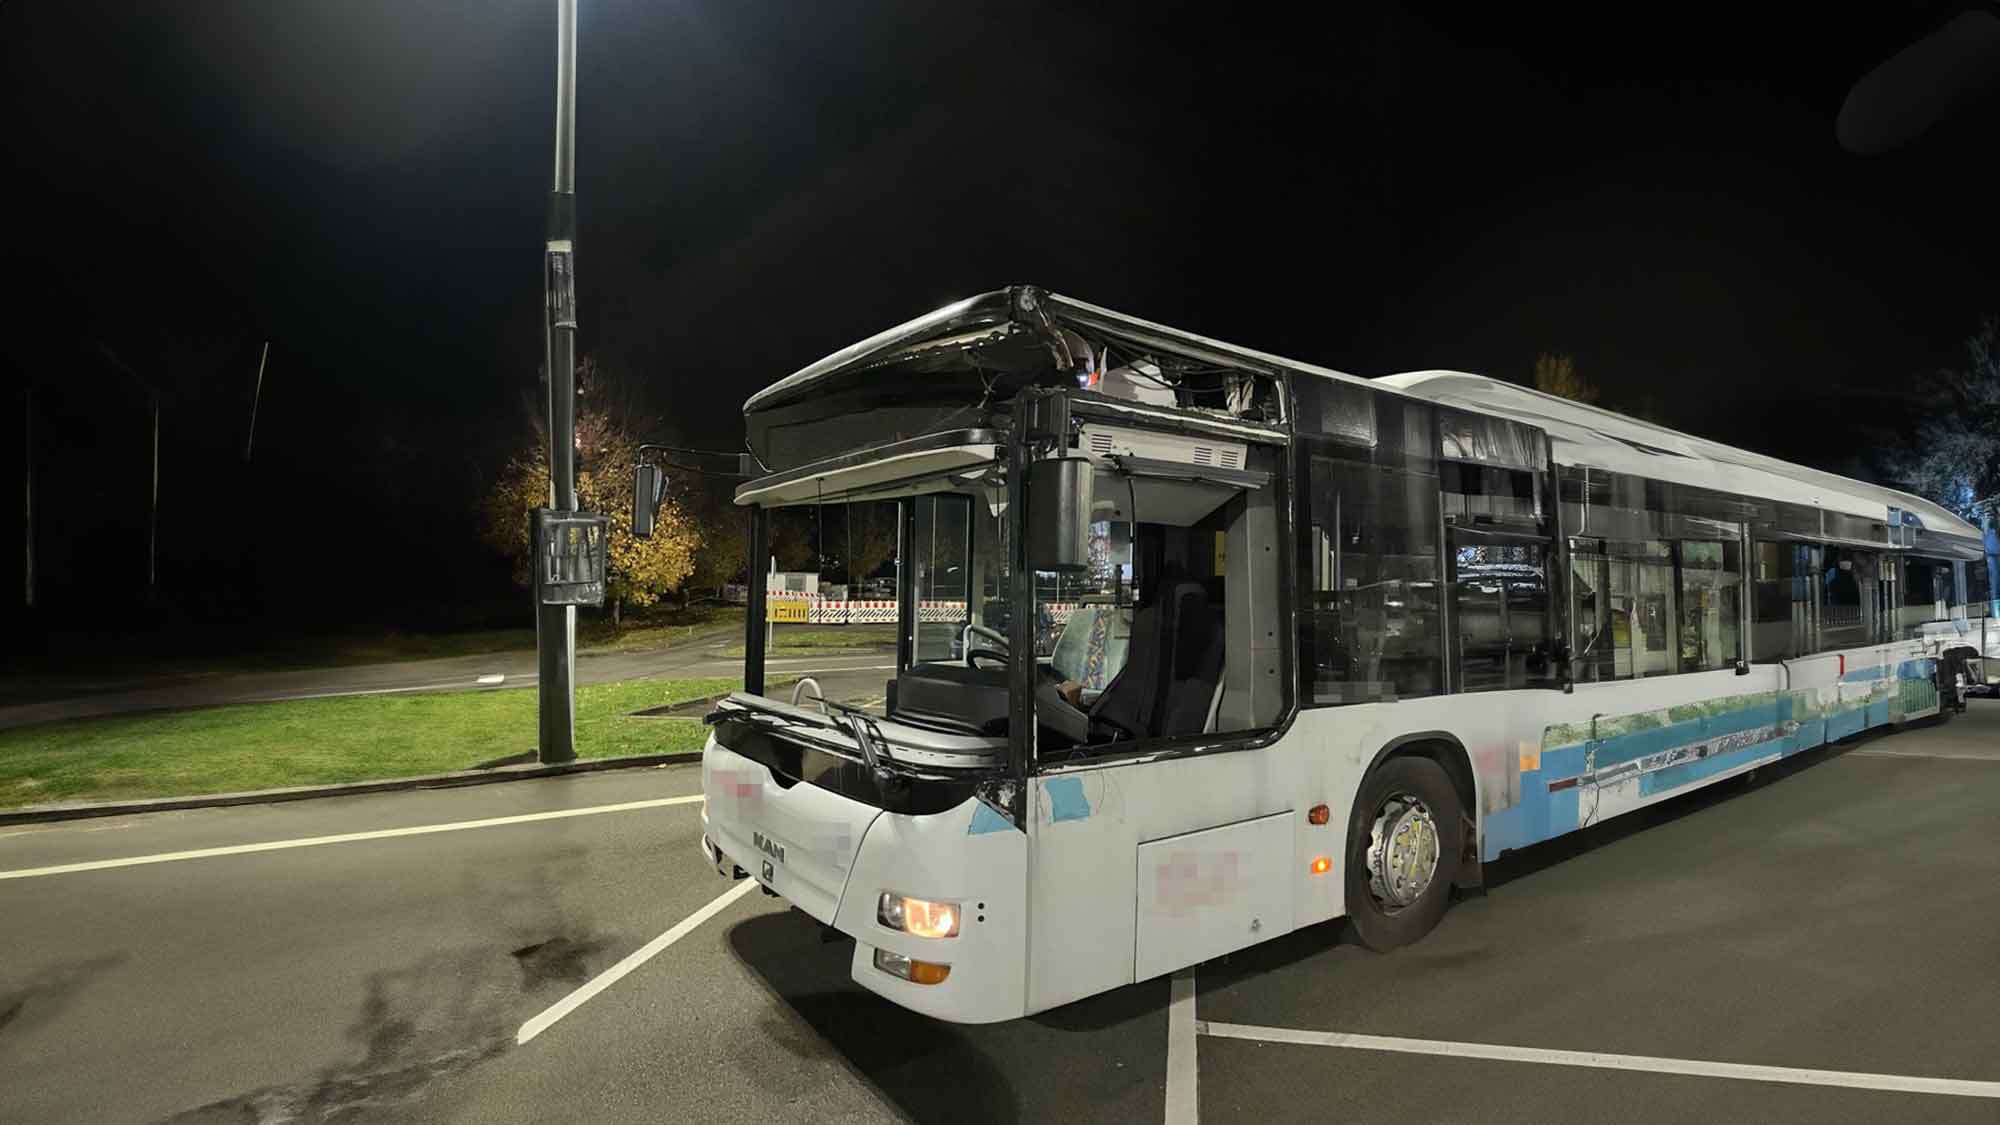 Polizei Bielefeld: eine luftige und gefährliche Busfahrt